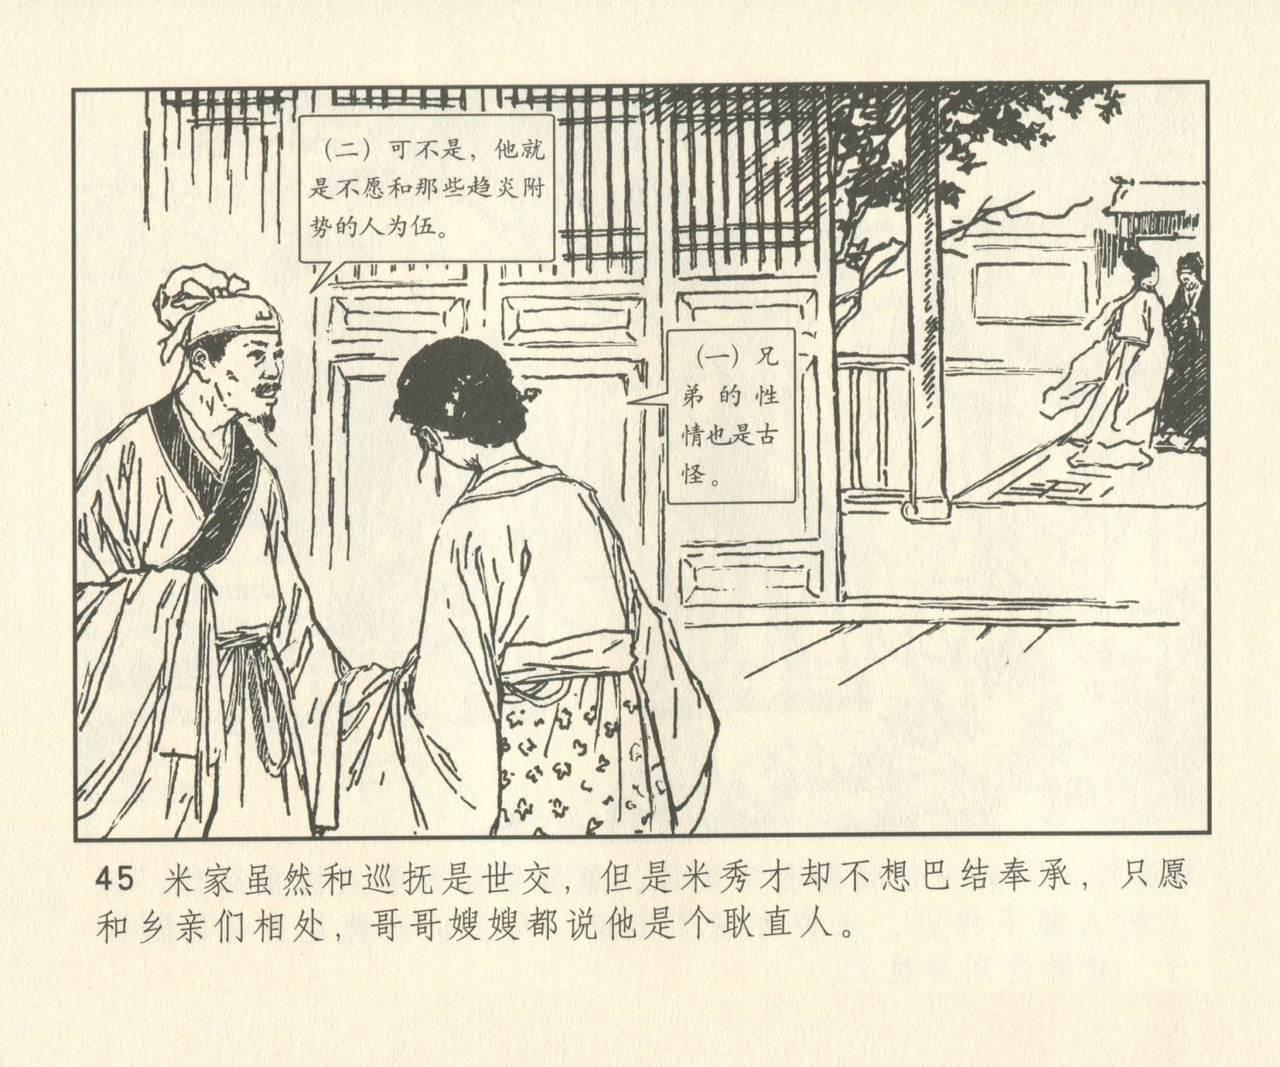 聊斋志异 张玮等绘 天津人民美术出版社 卷二十一 ~ 三十 173